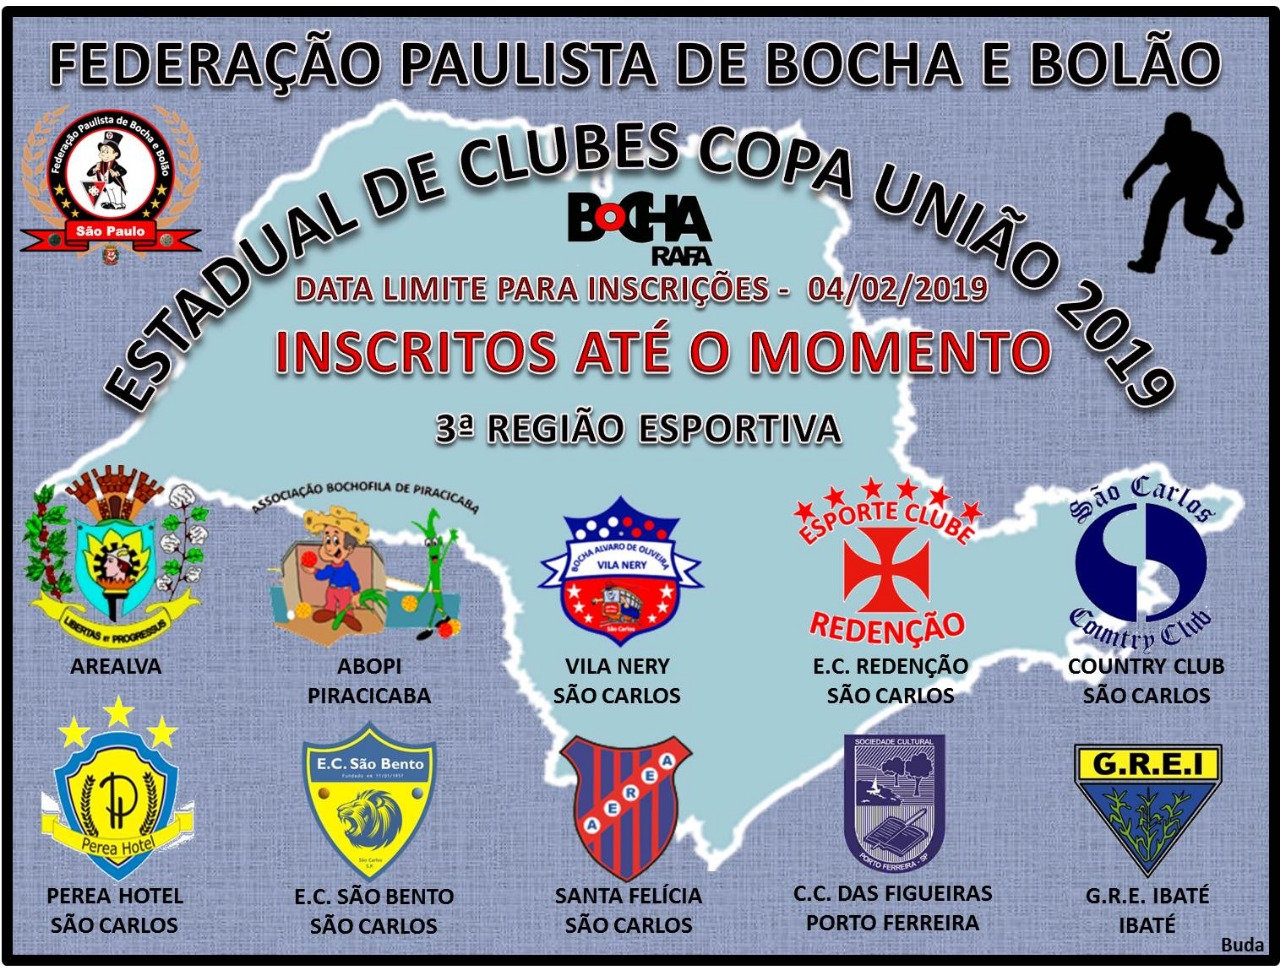 Copa União 2019 da FPBB